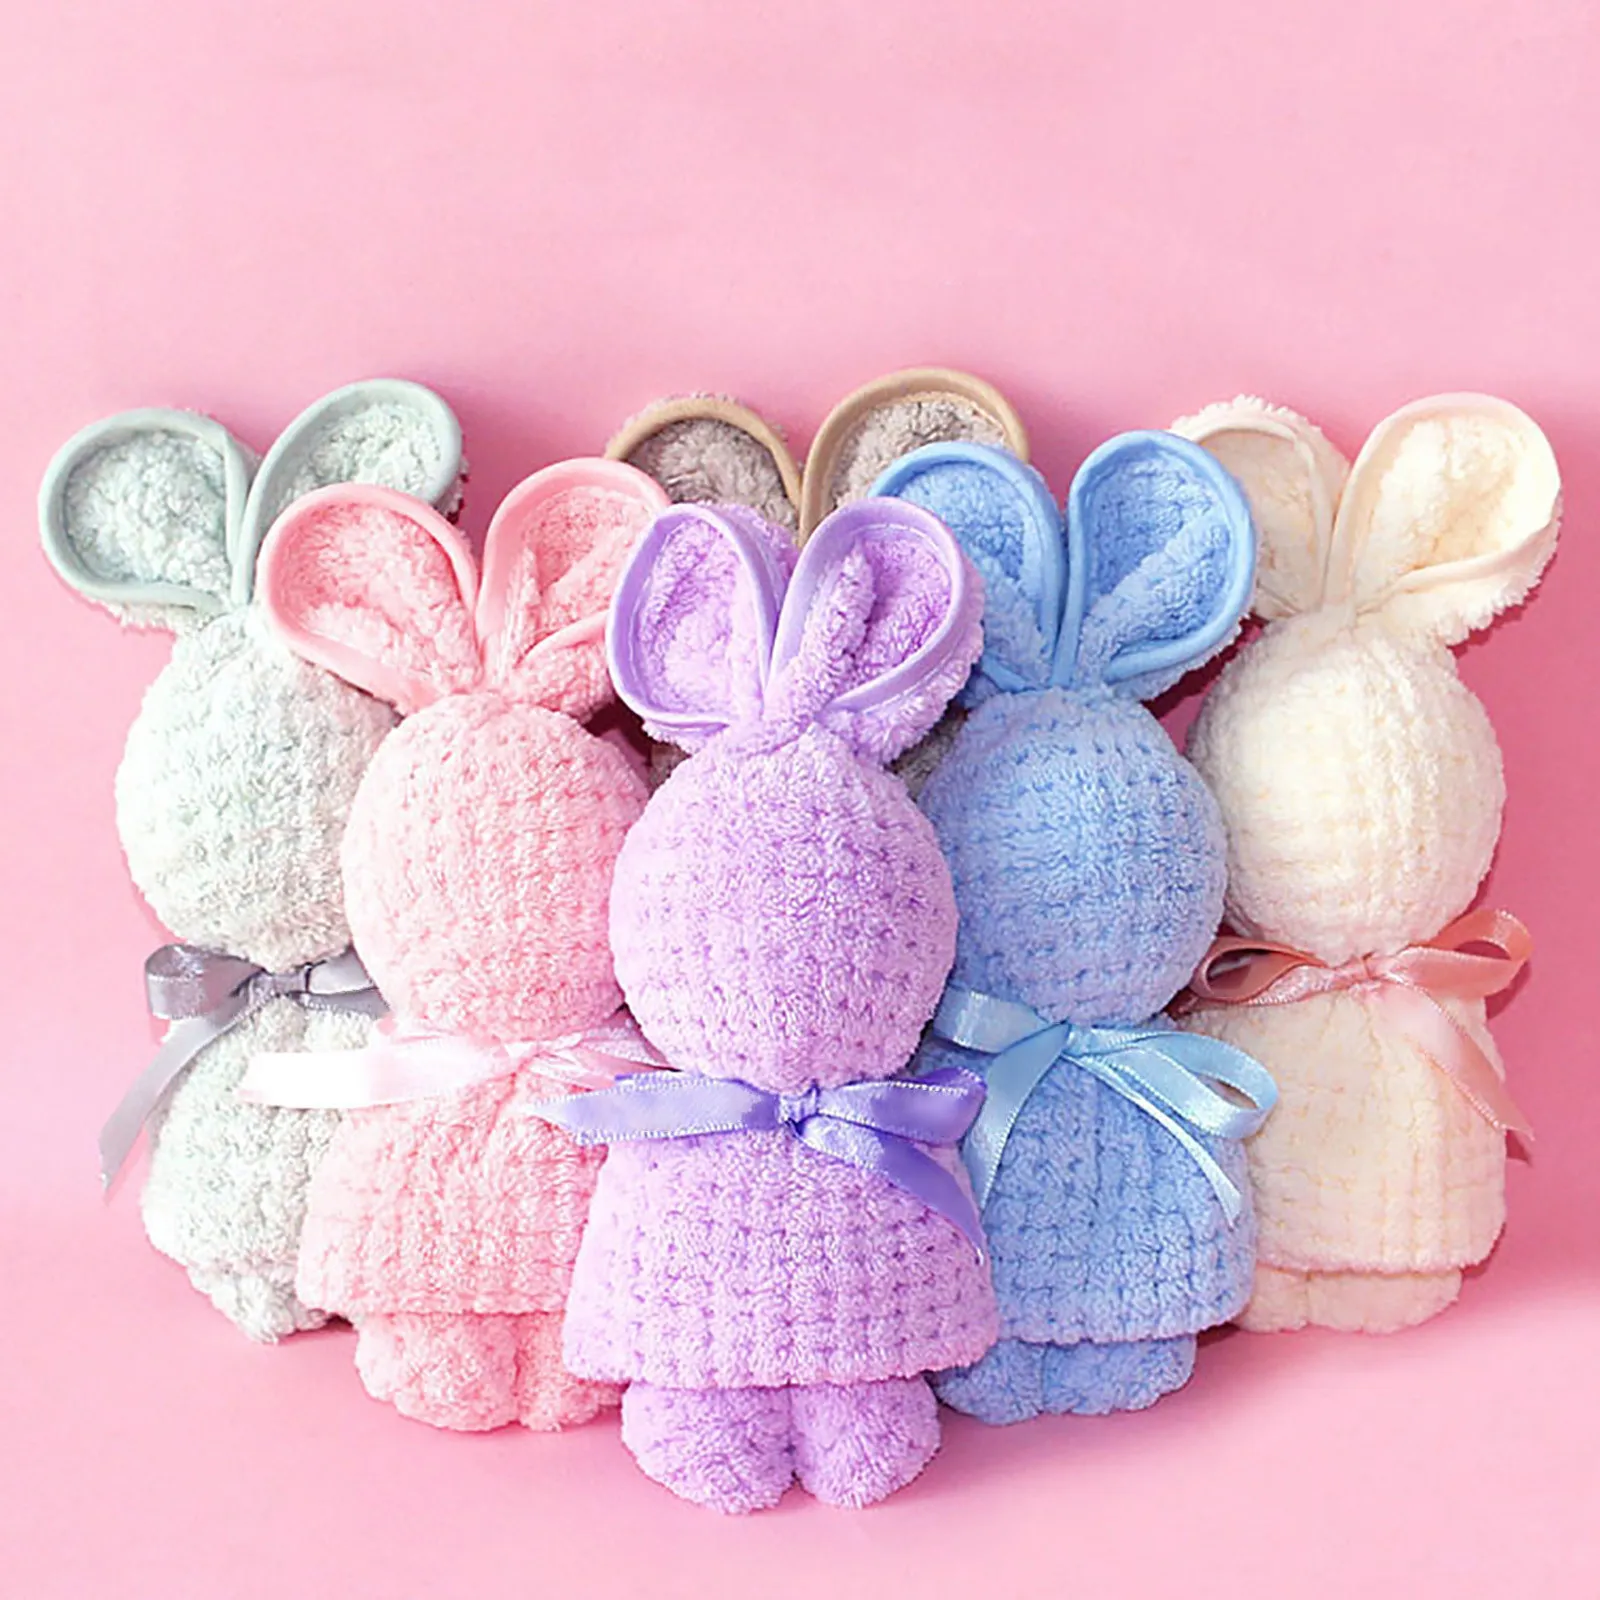 Sevimli tavşan tavşan peluş havlu yatıştırıcı bebek havlu yatıştırma oyuncaklar sevimli bebekler banyo yumuşak güvenlik battaniye bebek peluş banyo havlusu